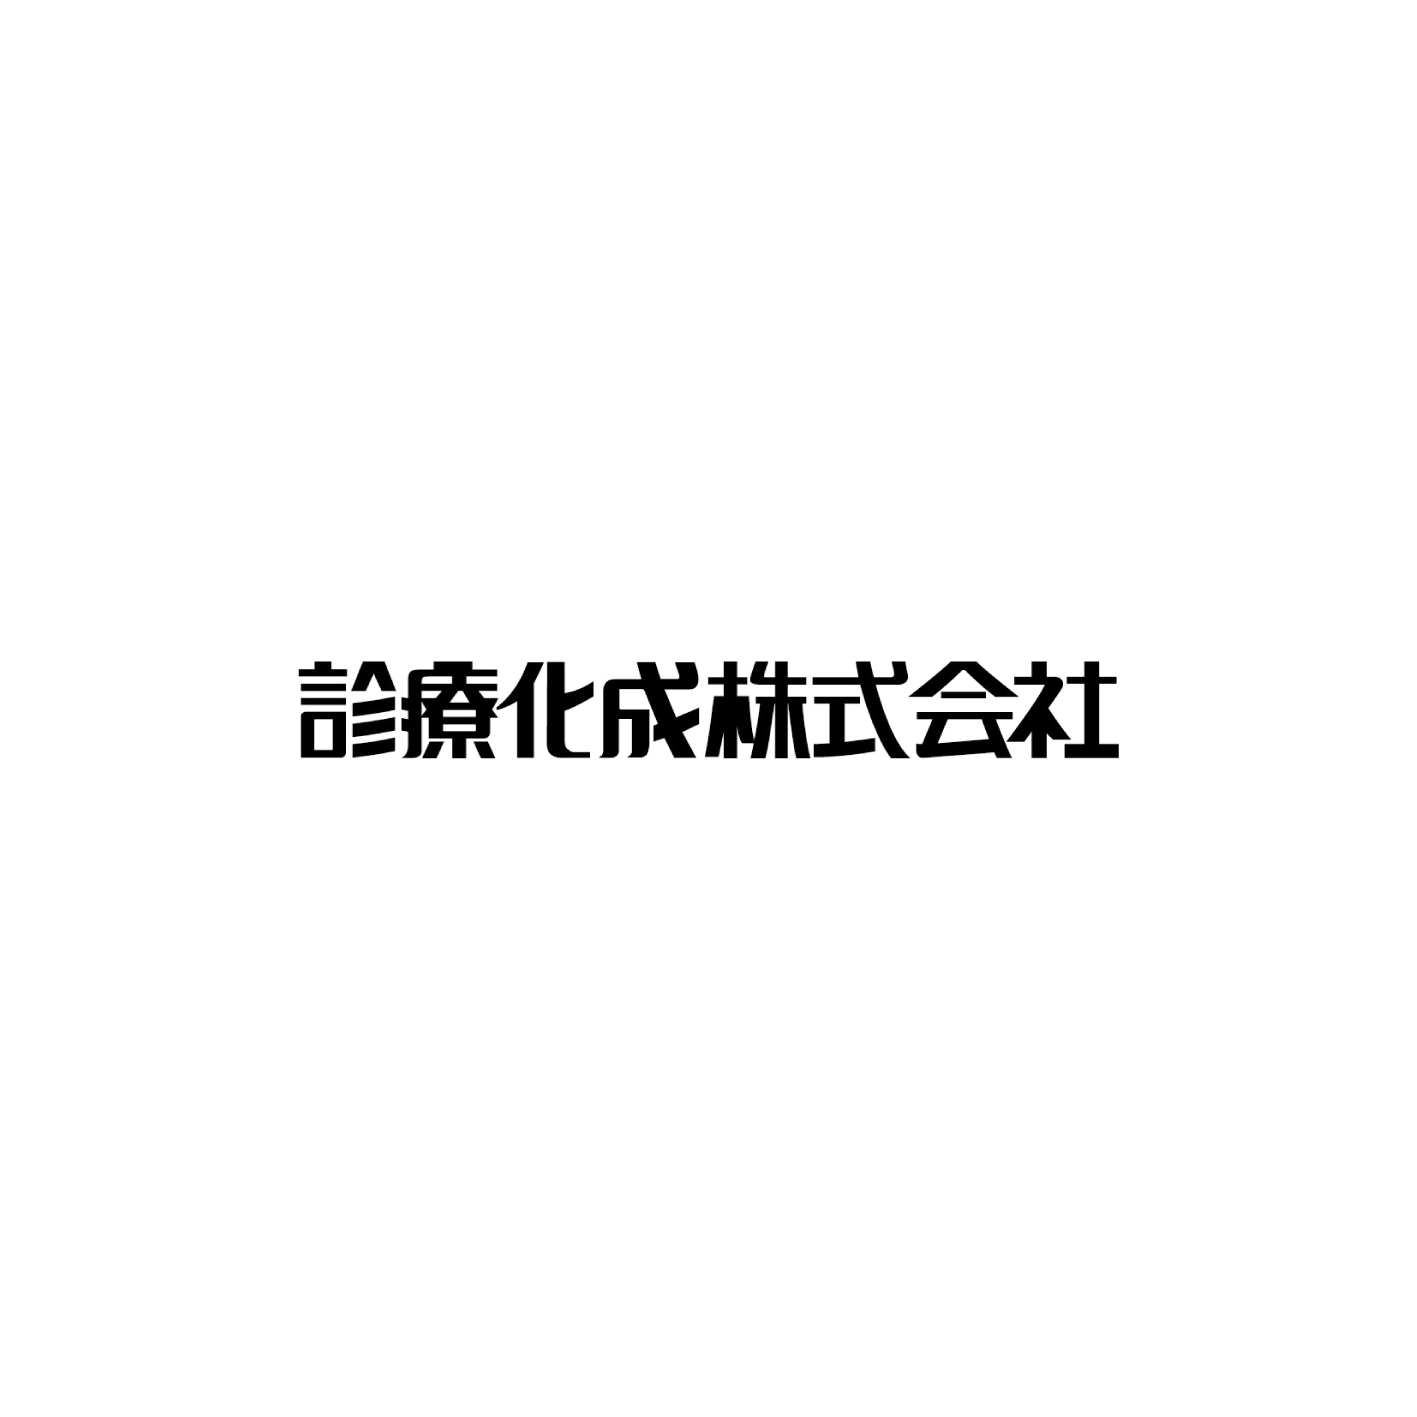 SHINRYO KASEI Co.,Ltd.